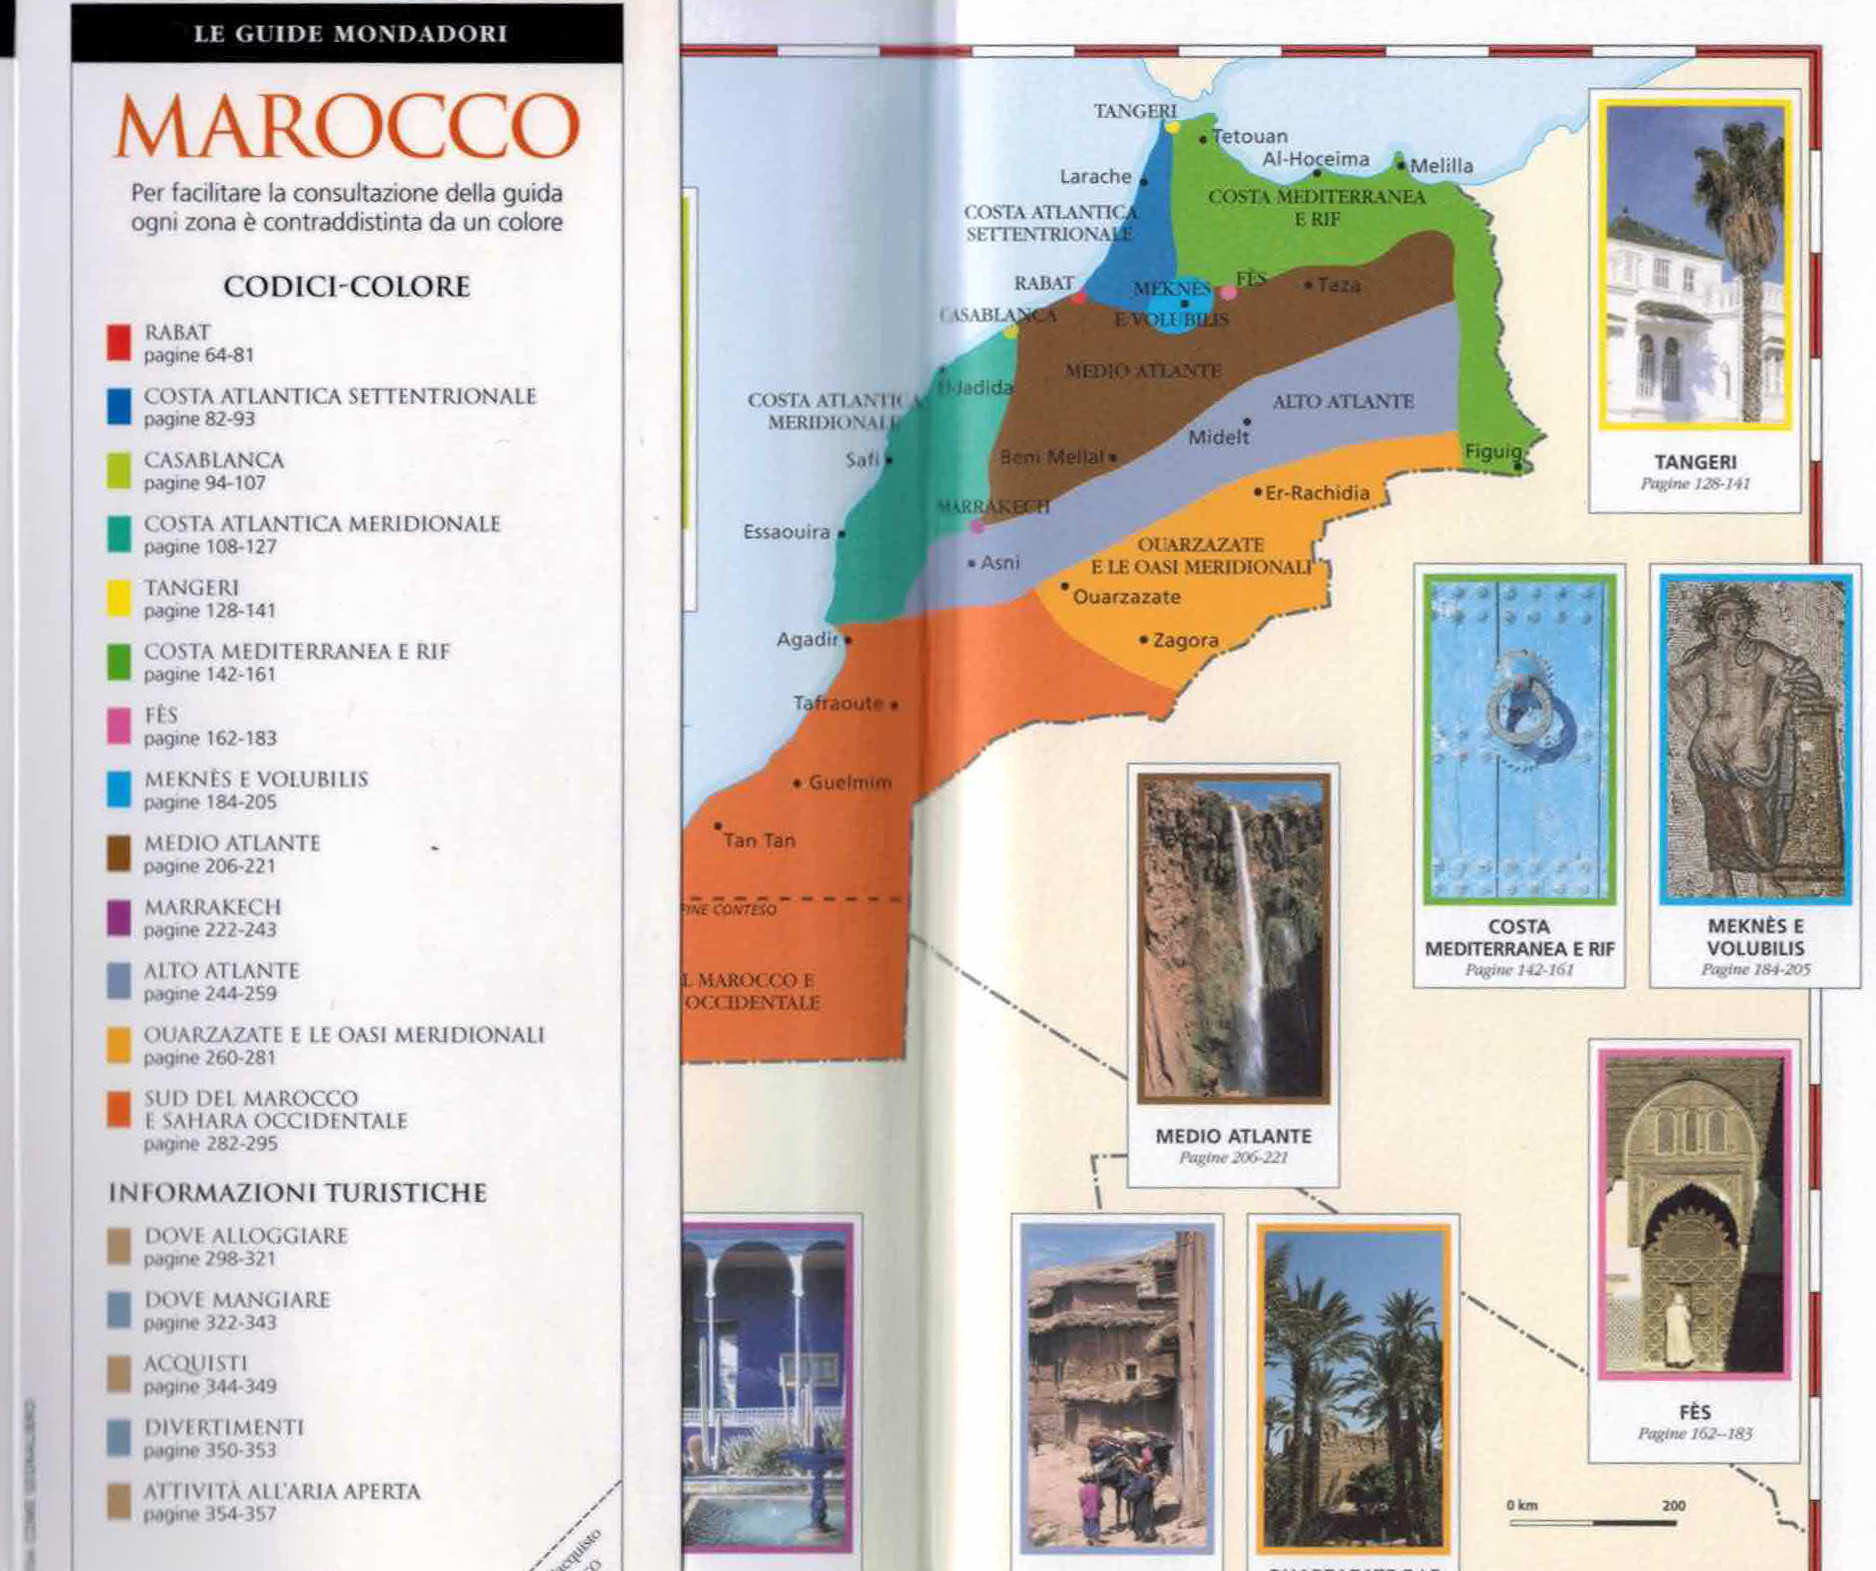 Guida Marocco Mondadori dettaglio zone